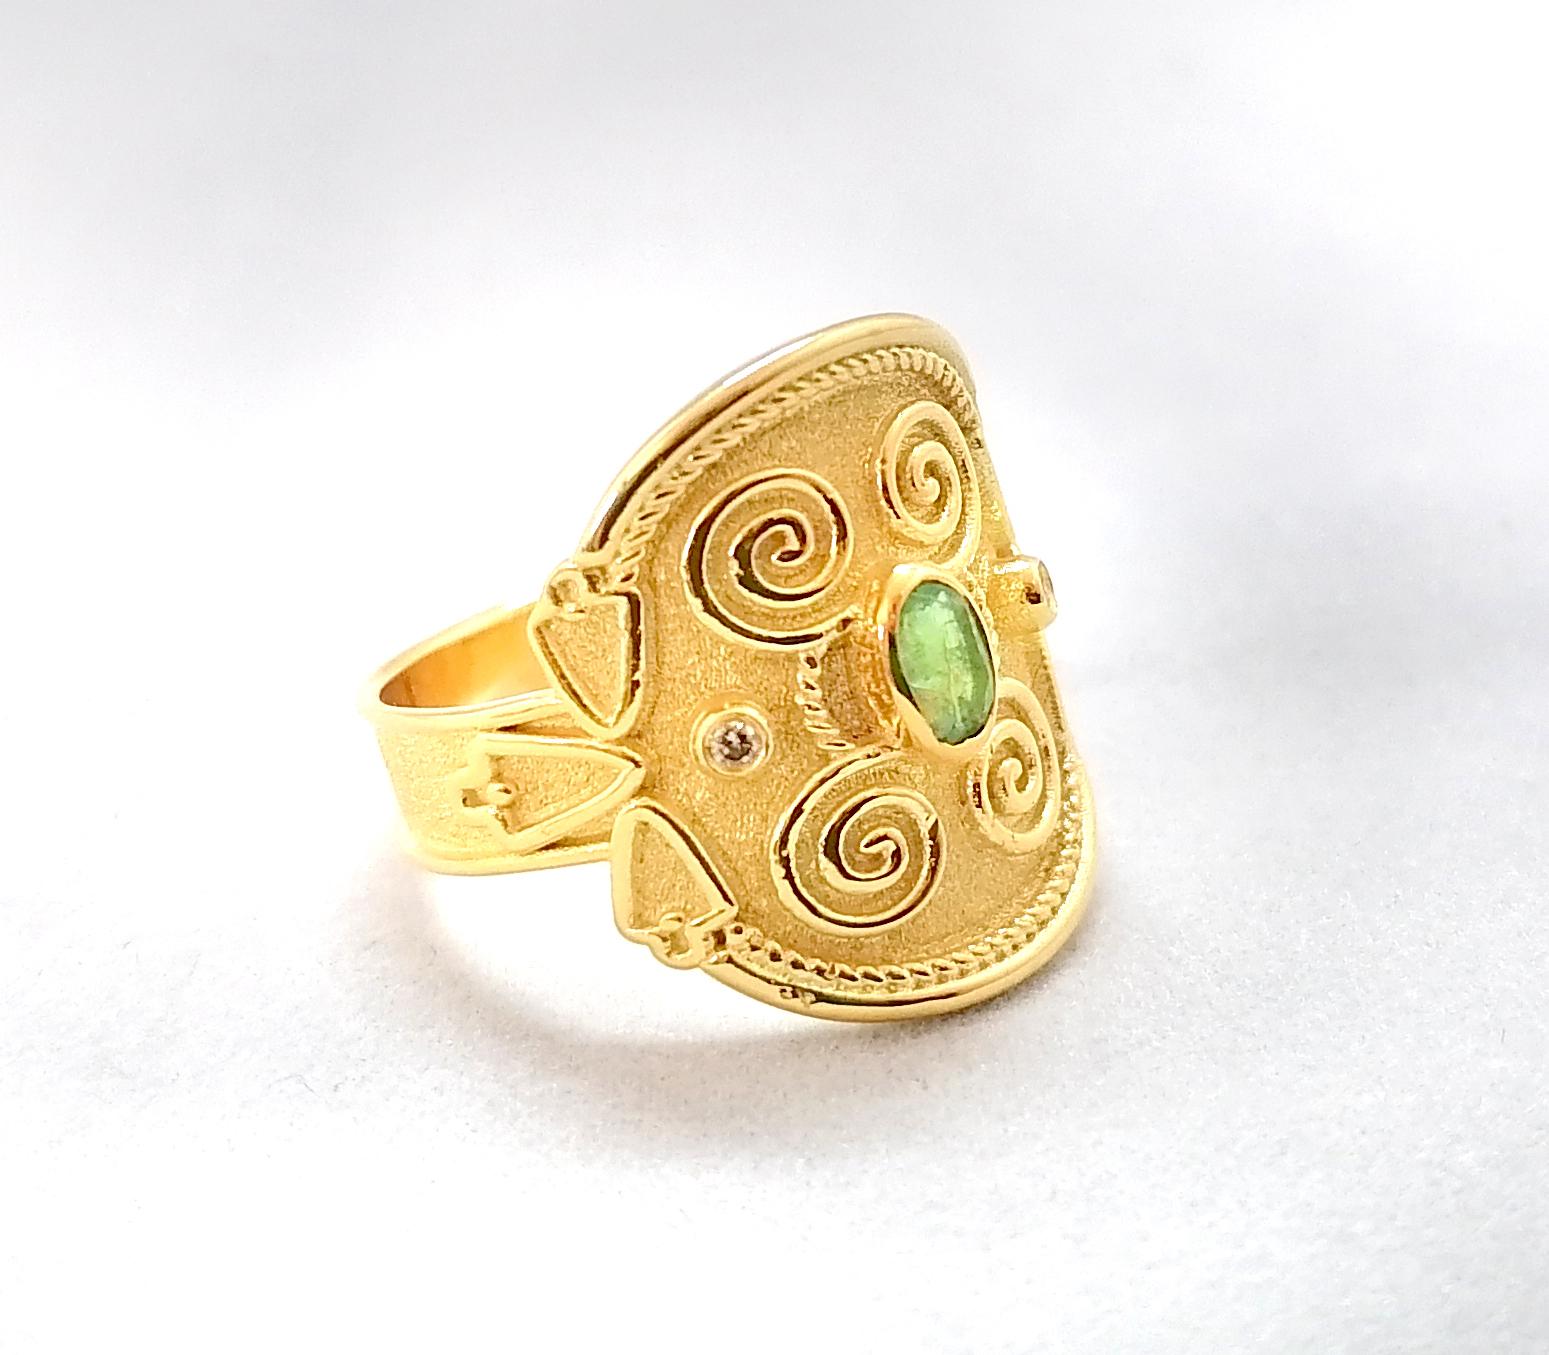 Cette bague à anneau S.Georgios, de conception unique, est en or jaune 18 carats. Elle est entièrement réalisée à la main avec une granulation de perles byzantines et une finition unique sur fond de velours. Cette magnifique bague comporte une